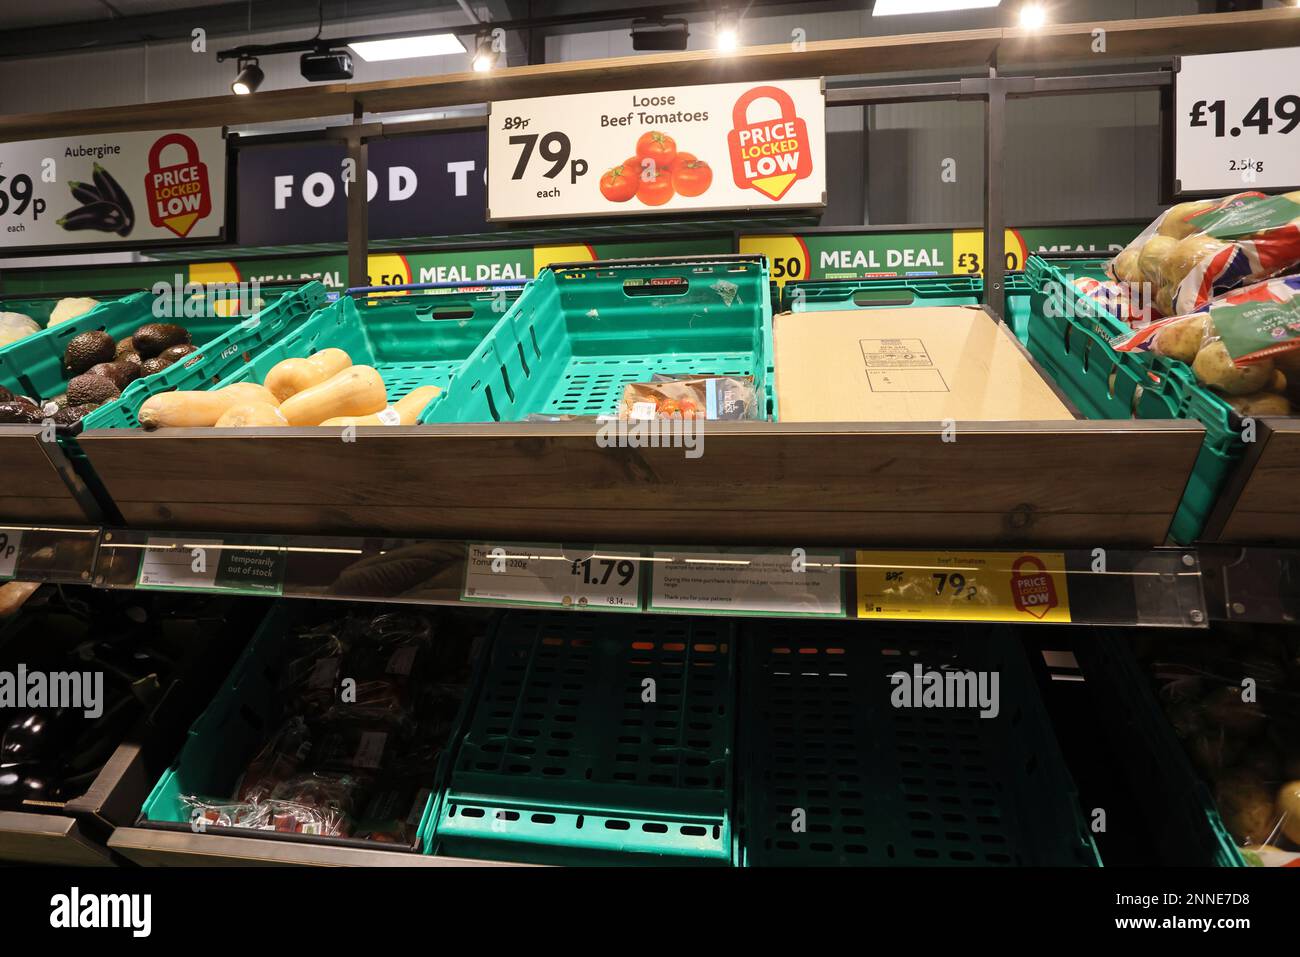 Gemüseverknappung in britischen Supermärkten im Februar/März 2023 aufgrund von Lieferkettenproblemen, schlechten Witterungsbedingungen in Marokko und Spanien, Volatilität der Lebensmittelproduktion, Brexit und geopolitischen Ereignissen. Stockfoto